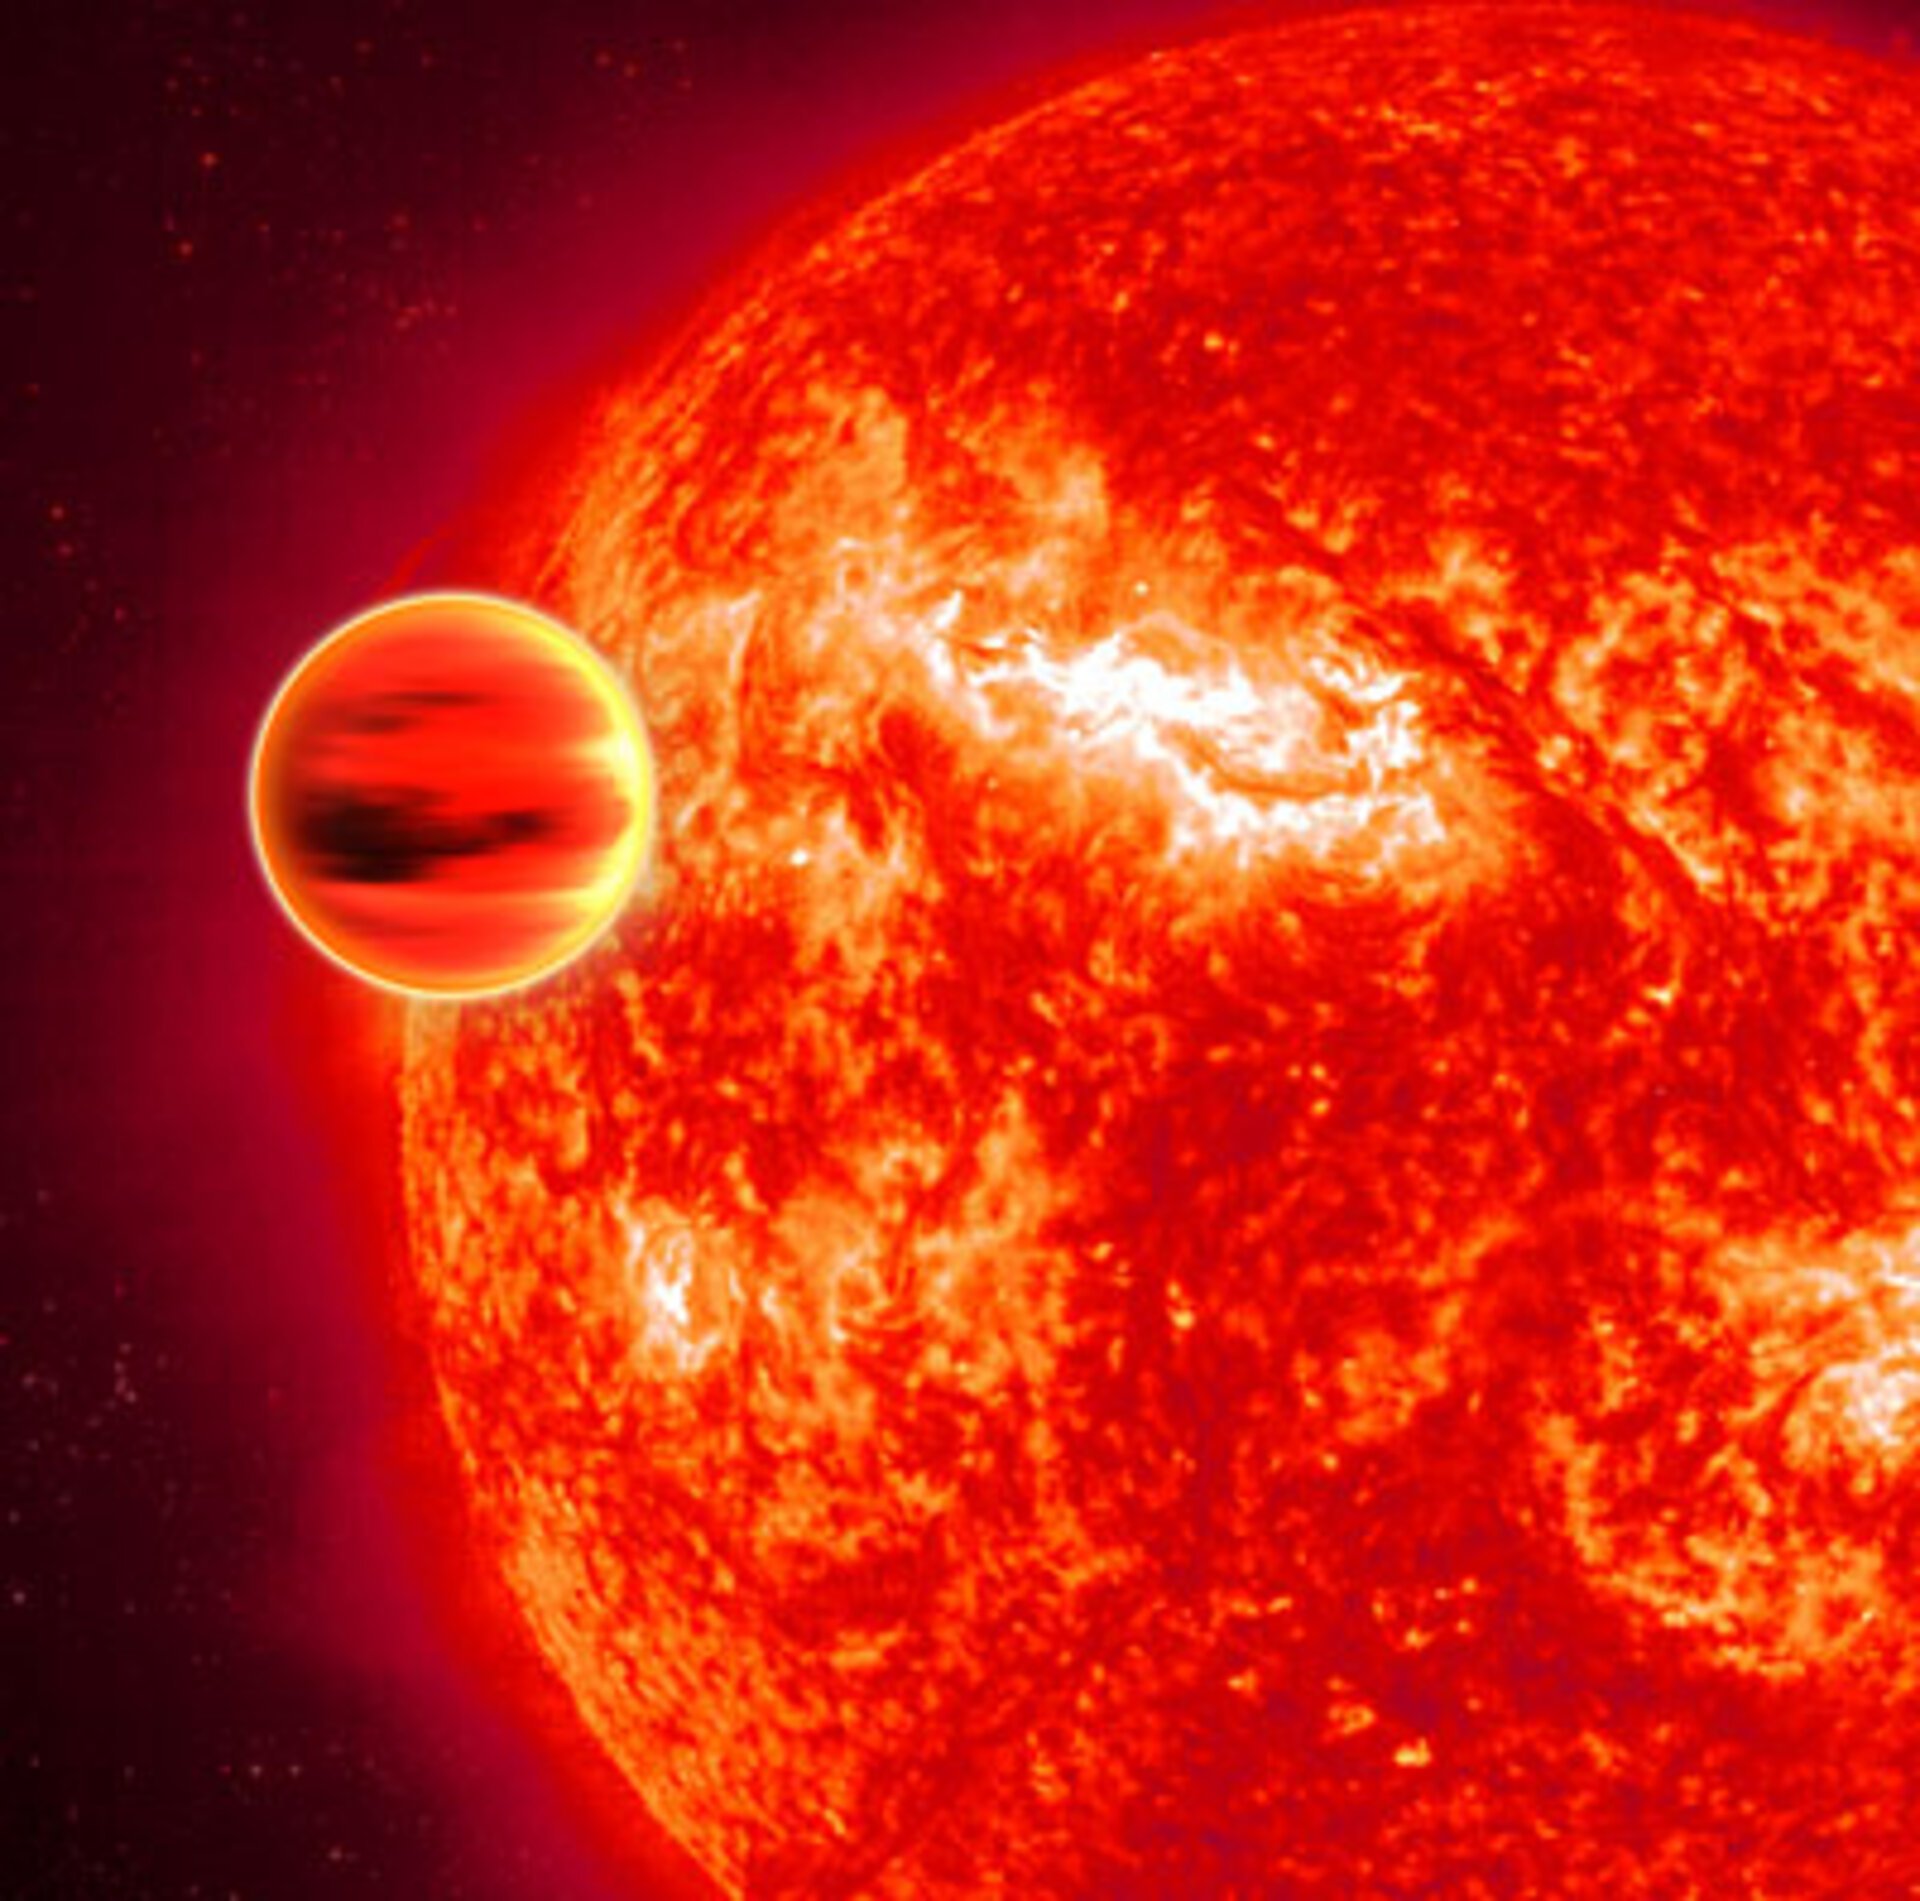 Concepção artística de um exoplaneta massivo próximo a sua estrela hospedeira. No caso, o sistema HD 189733b